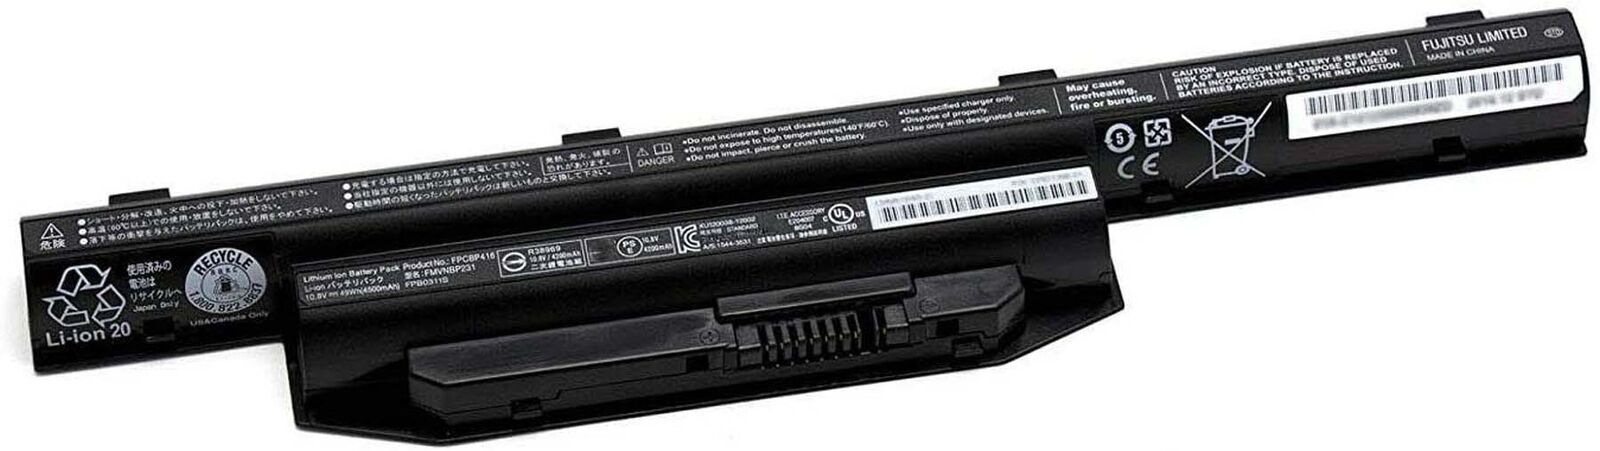 Genuine Battery FPB0311S FPCBP429 For Fujitsu E751 A544 A555 E743 E744 E753 S904